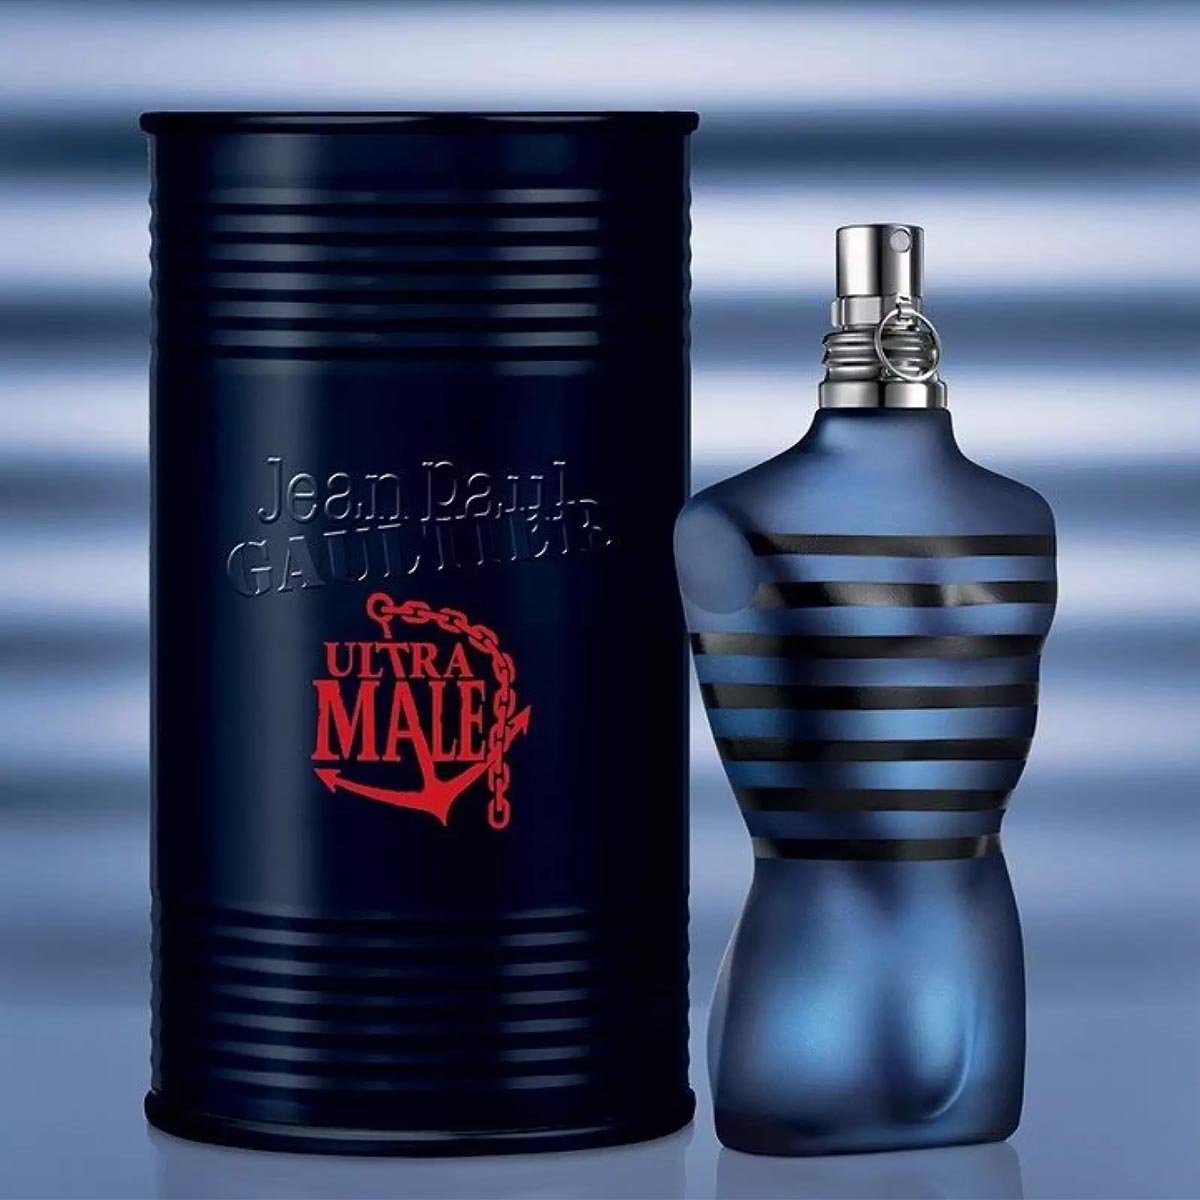 Jean Paul Gaultier "Ultra Male" EDT Intense - My Perfume Shop Australia